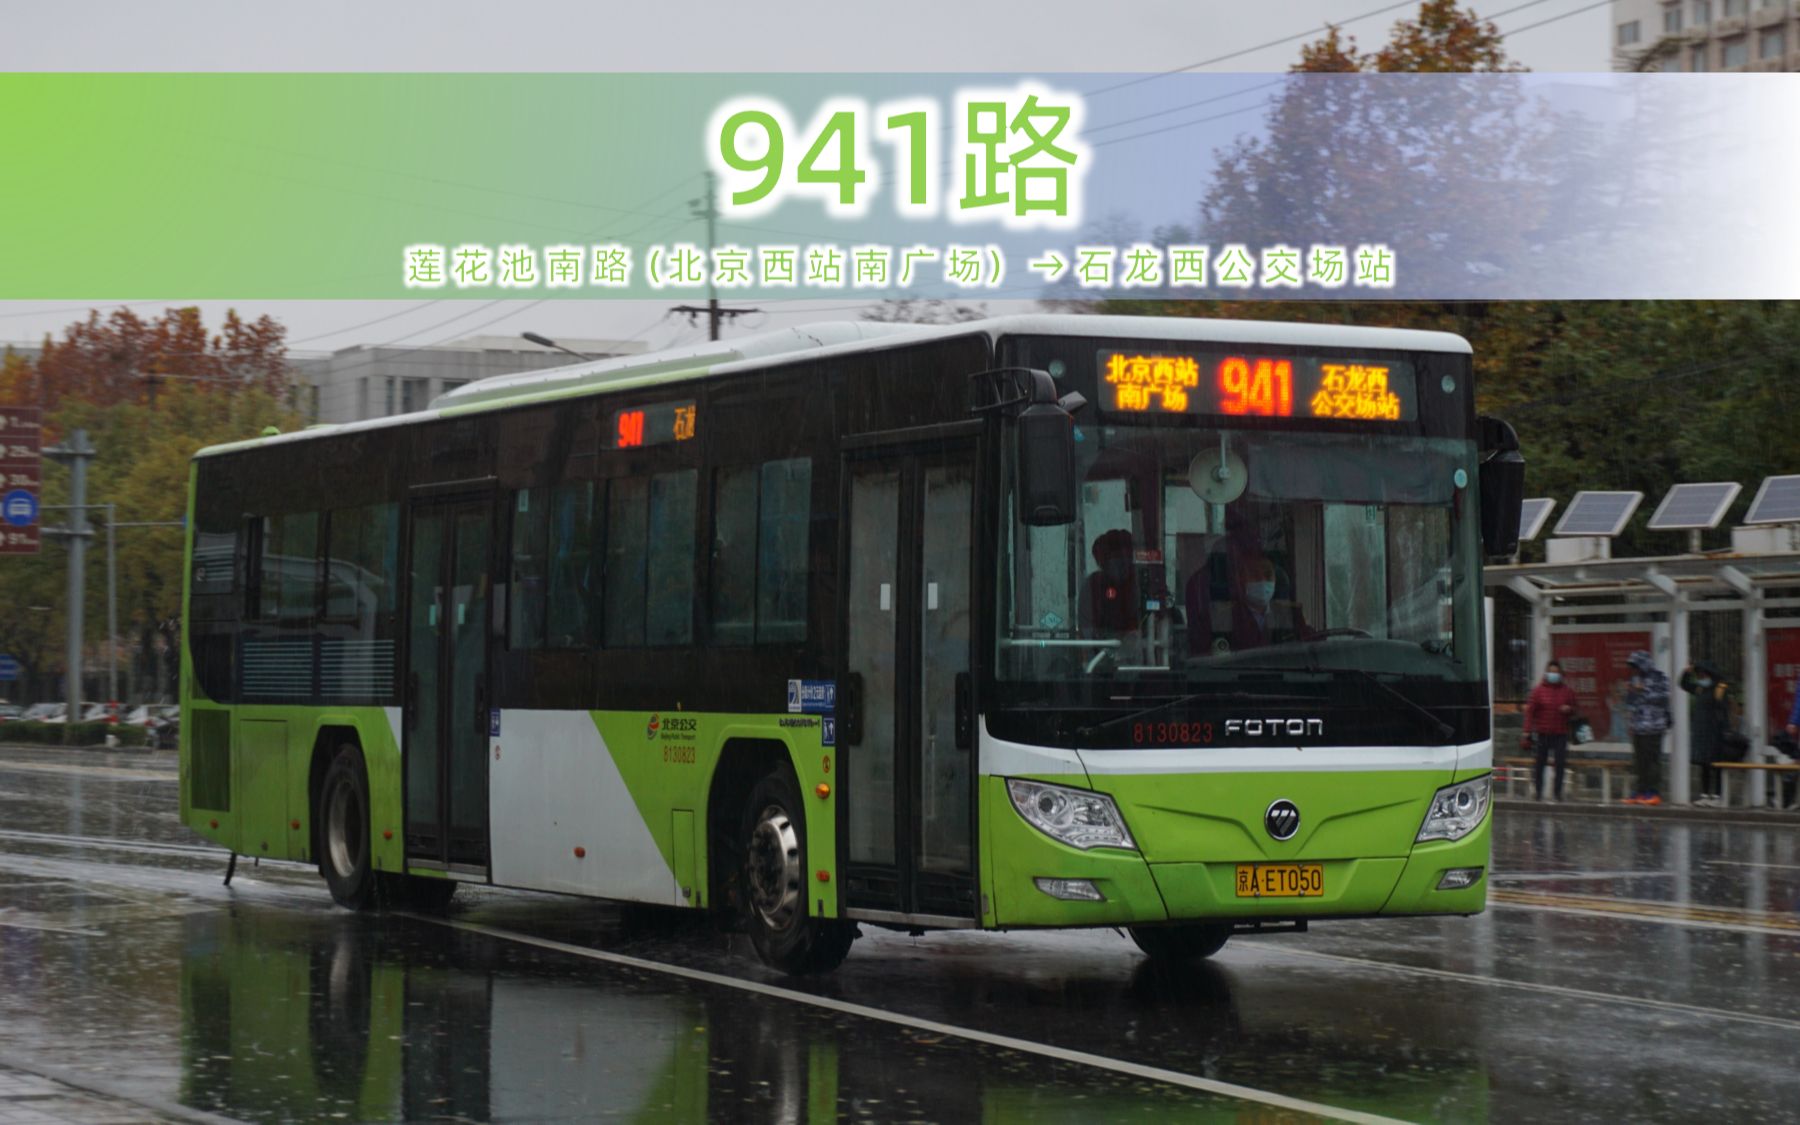 941快公交线路图图片